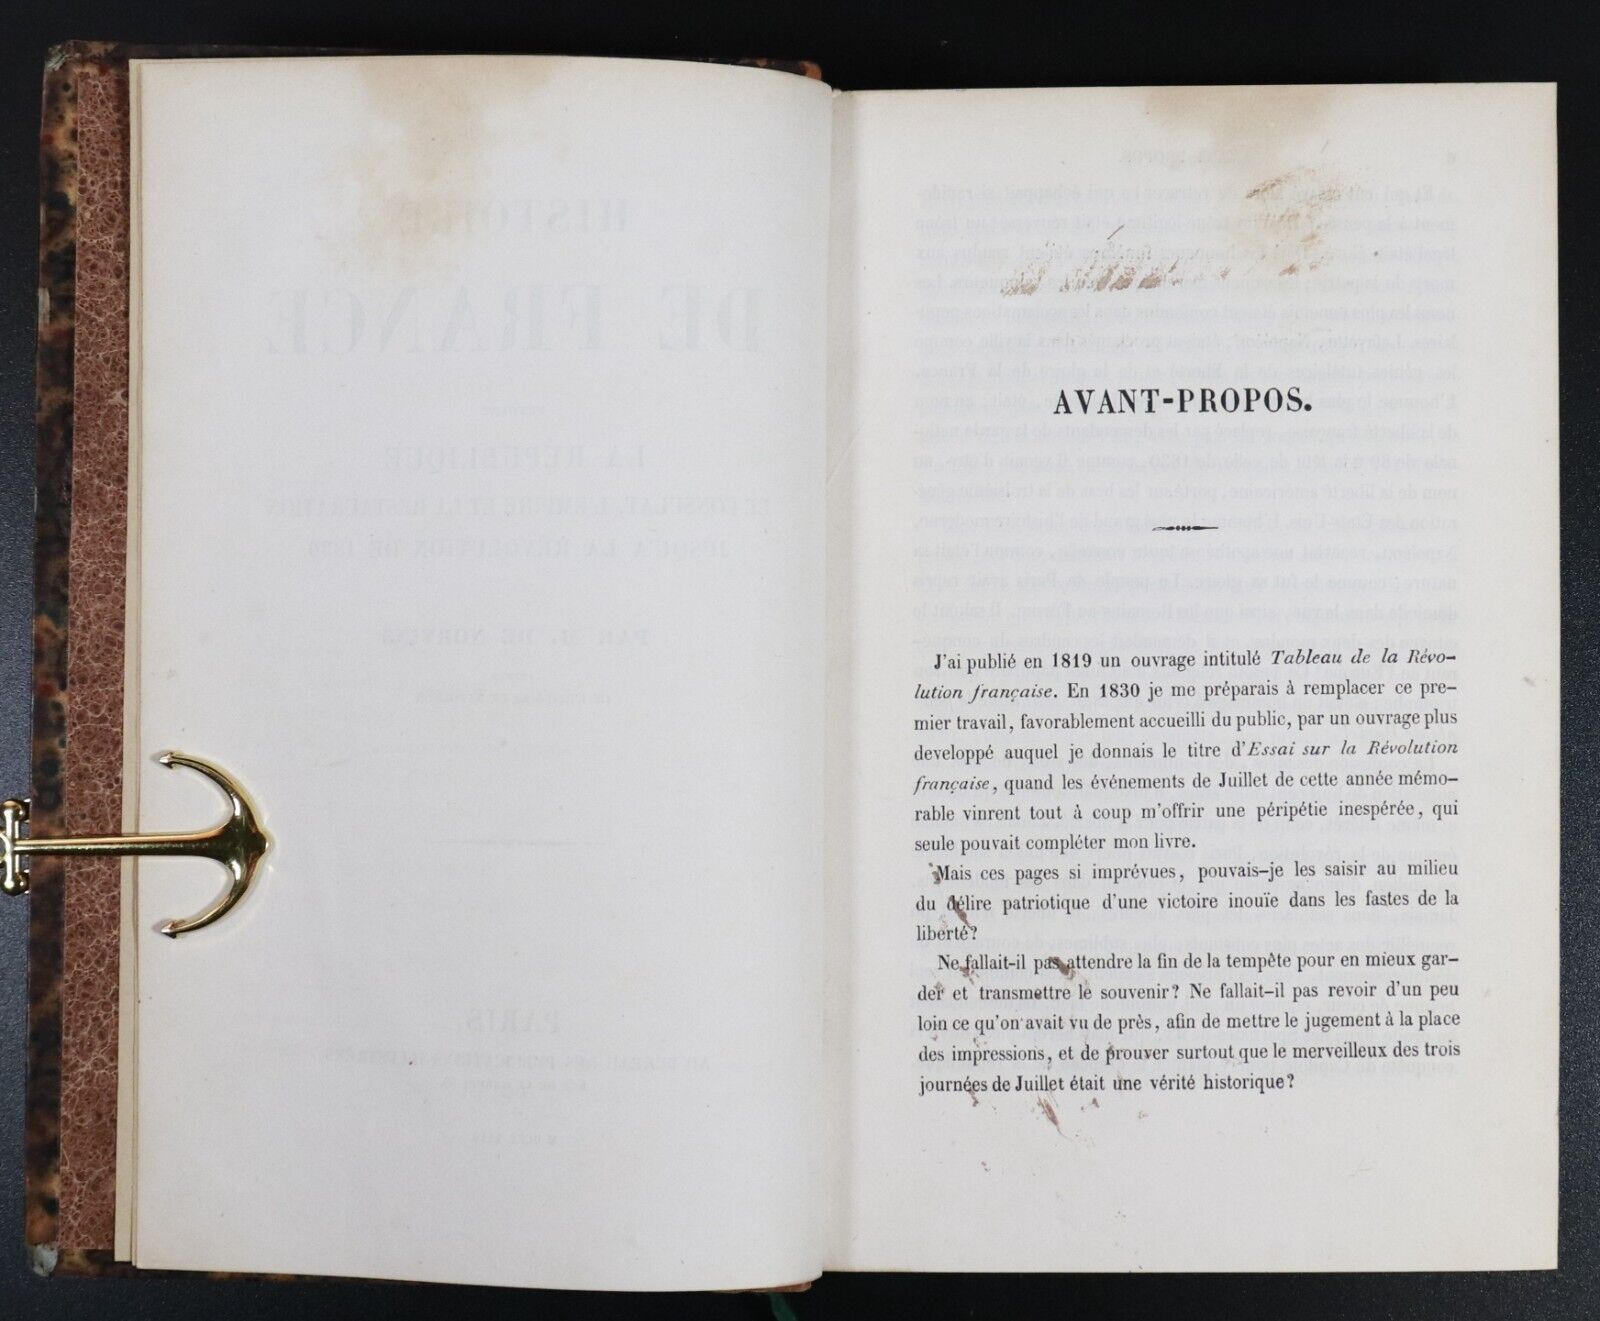 1844 Histoire De France by M. De Norvins Antiquarian French History Book